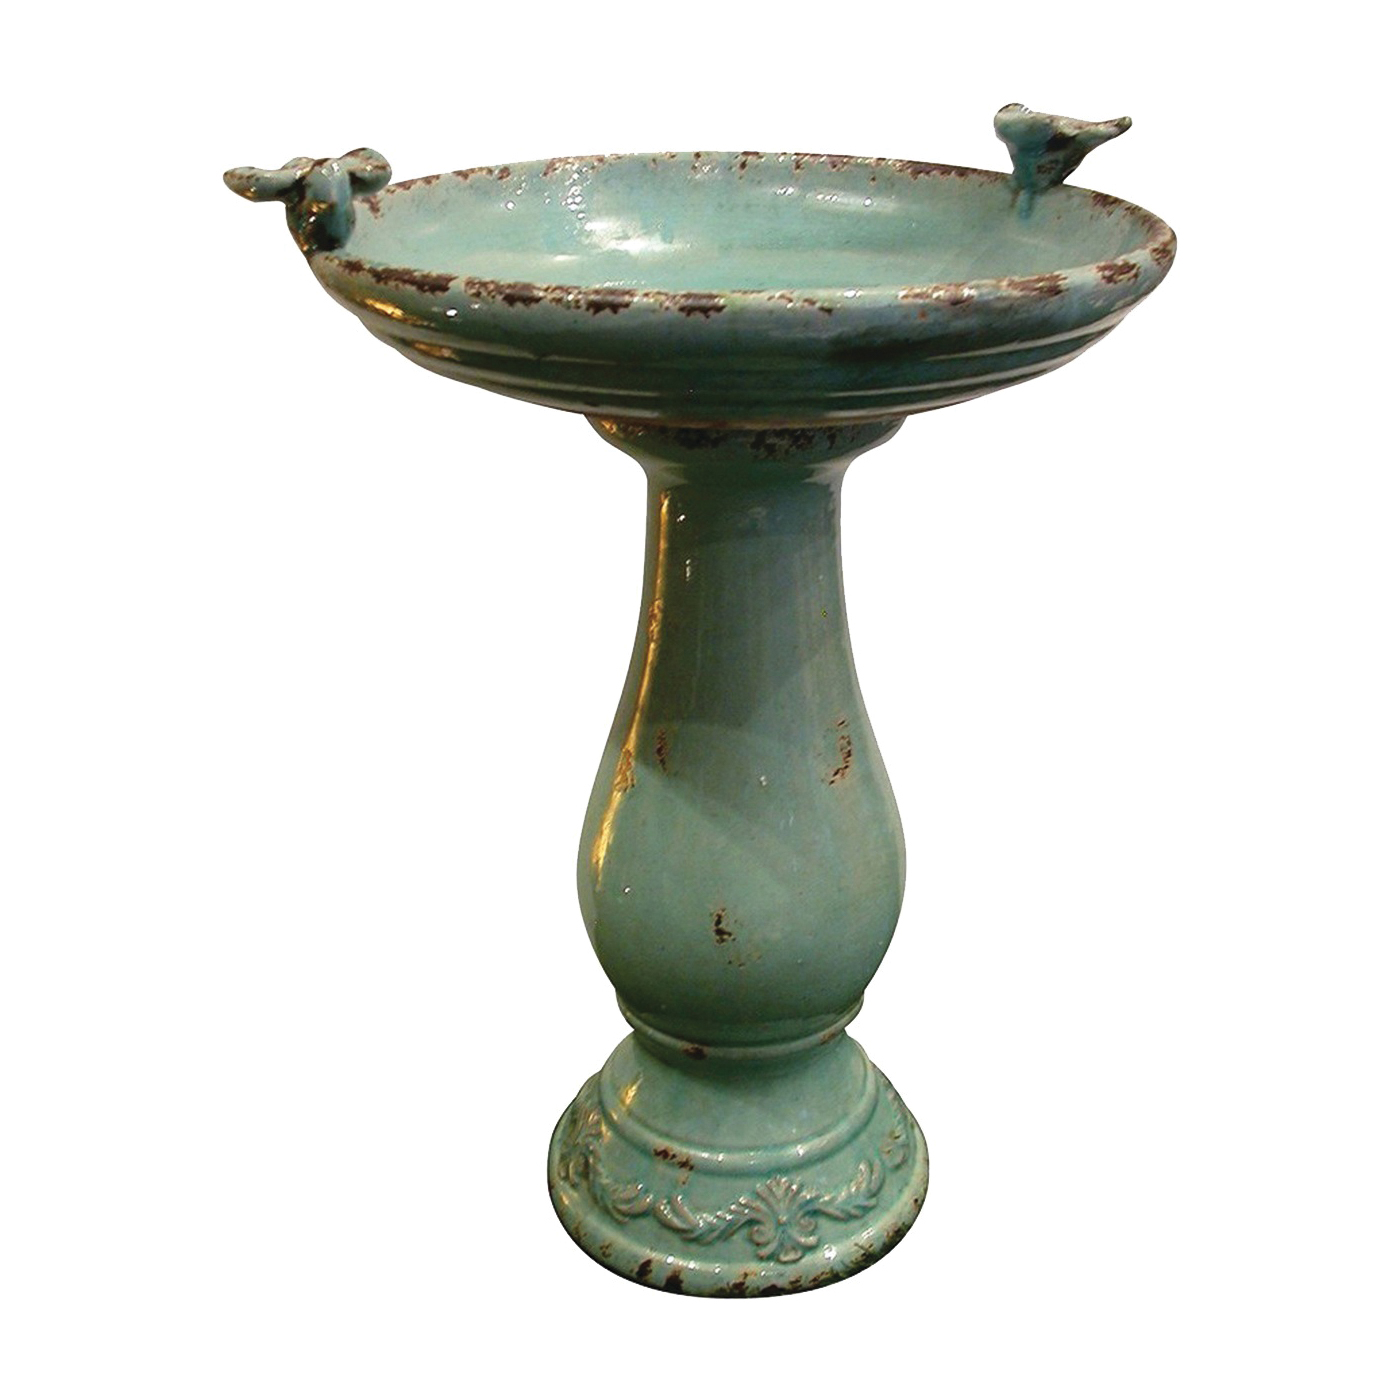 TLR102TUR Antique Ceramic Birdbath, 1-Tier, Ceramic, Turquoise, Antique